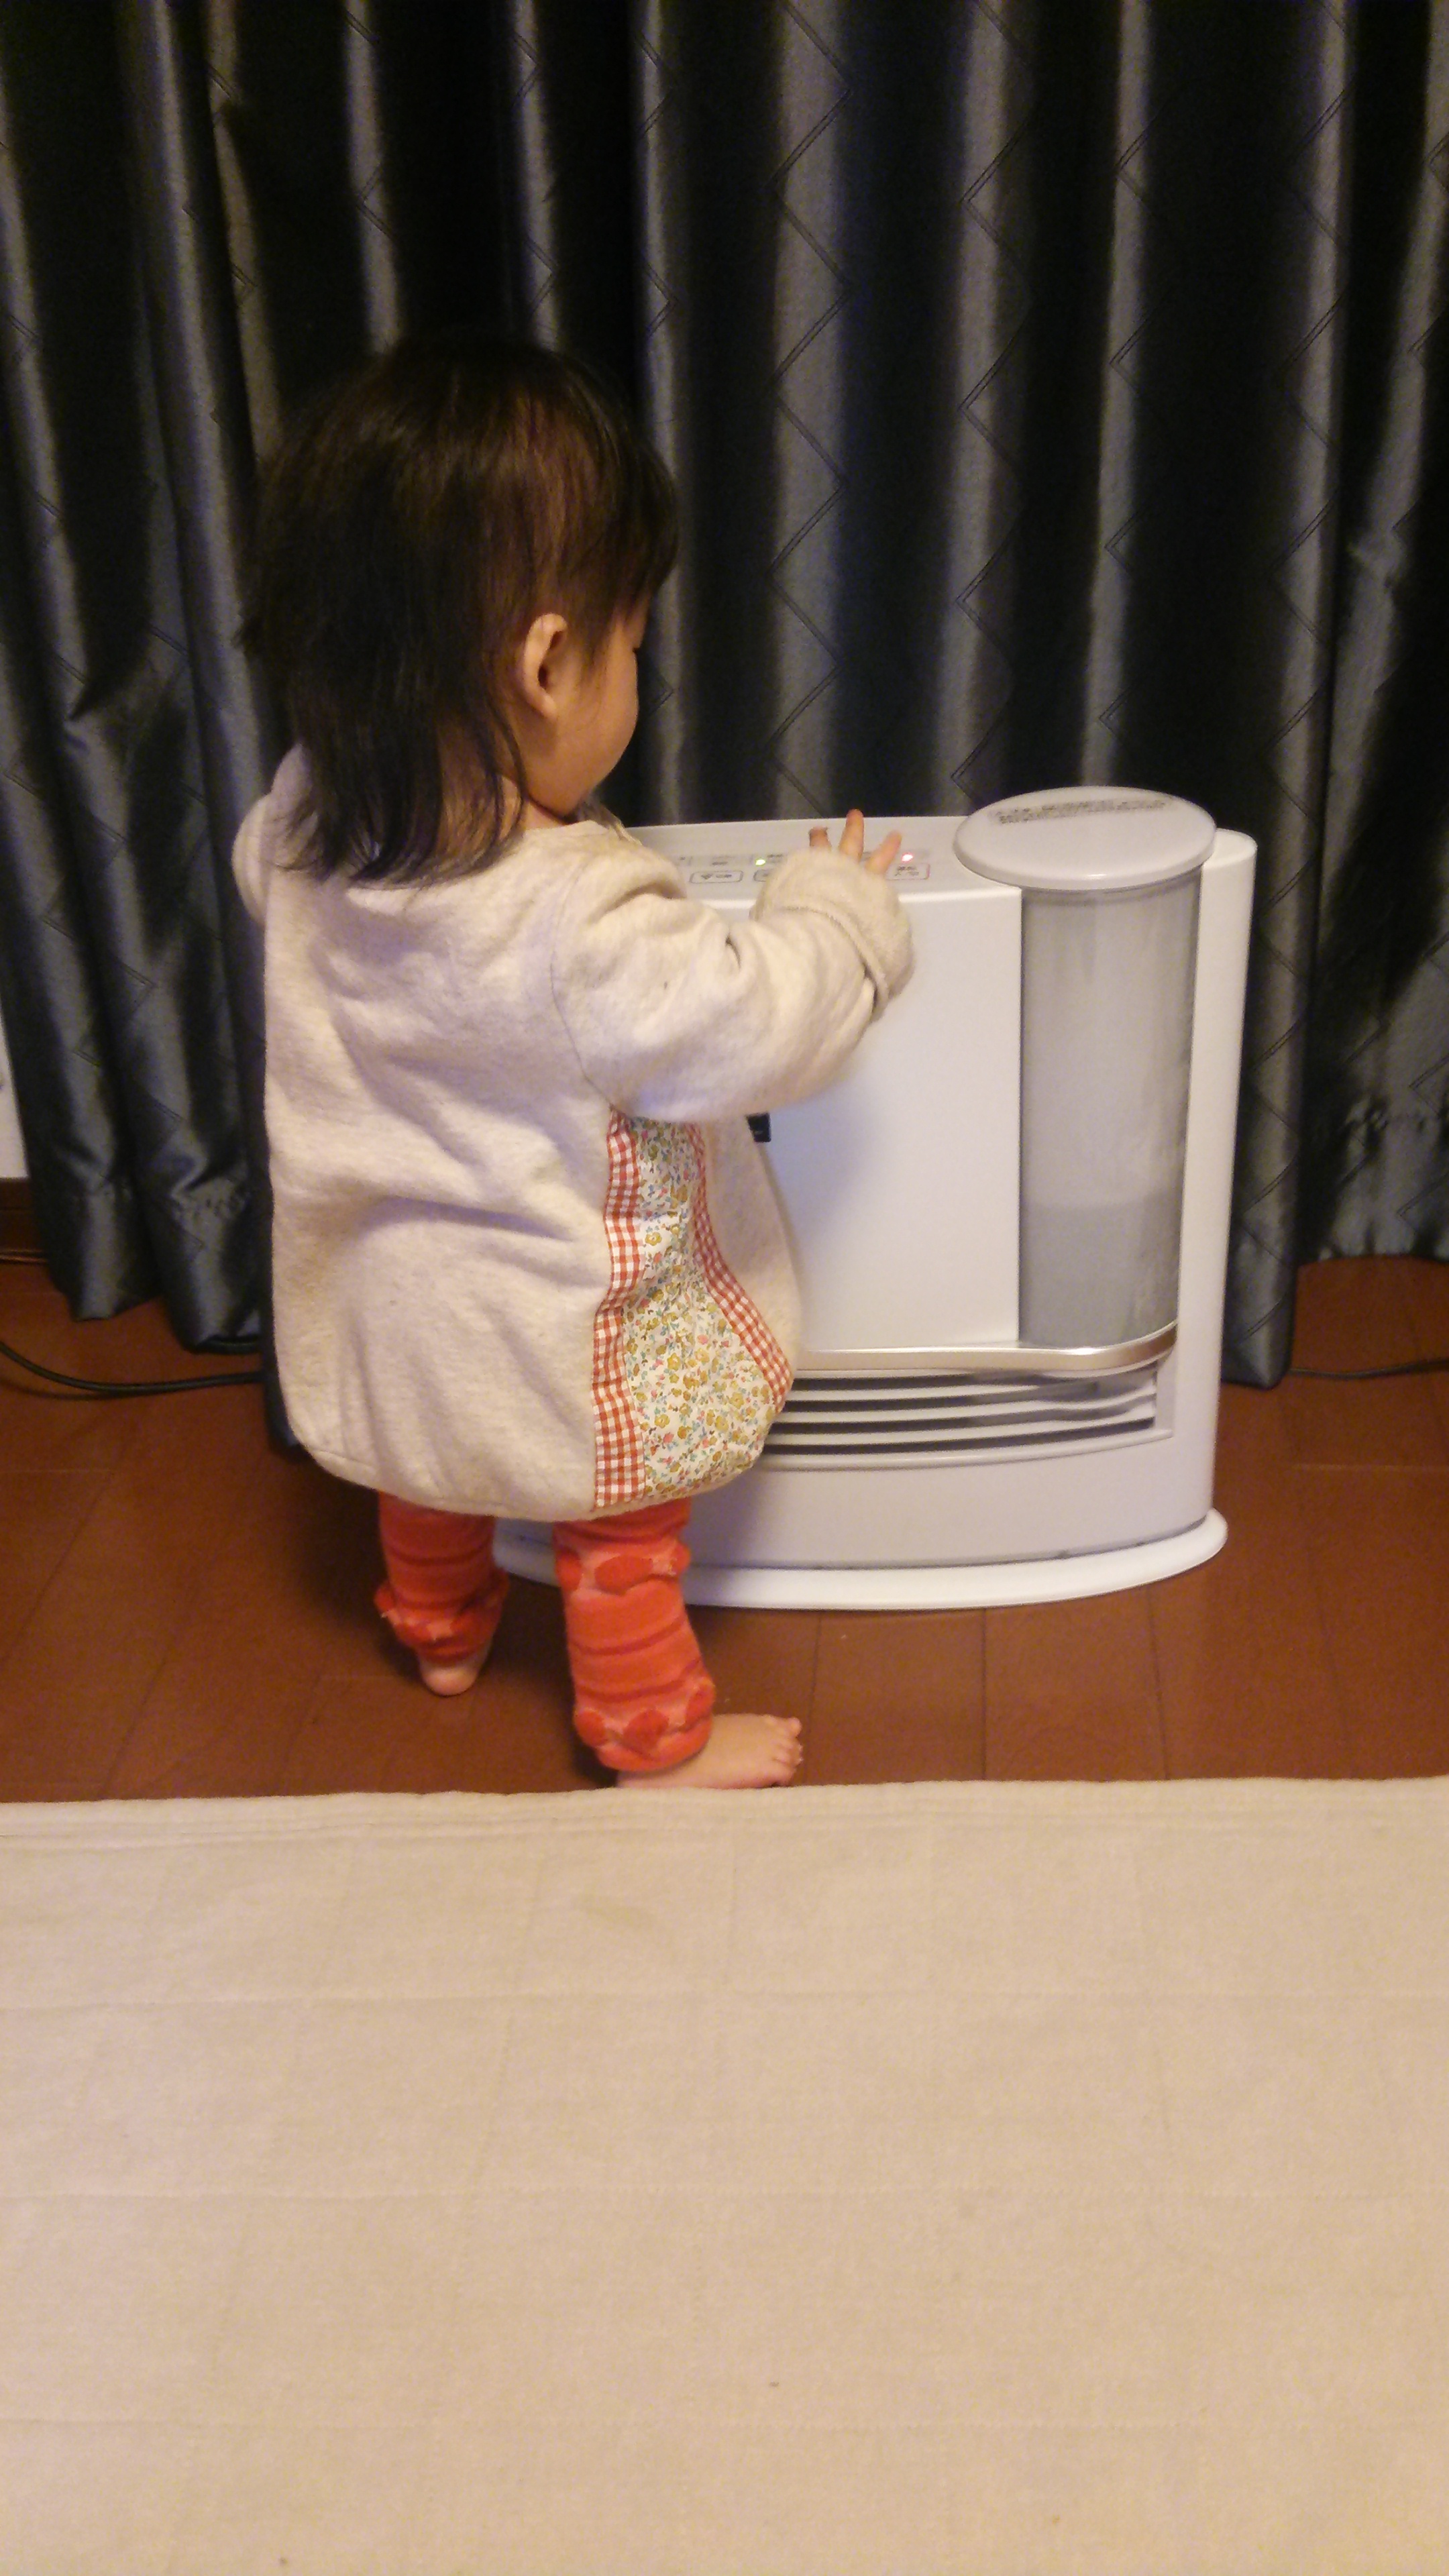 赤ちゃん 暖房乾燥対策に加湿機能付暖房器具プラズマクラスター